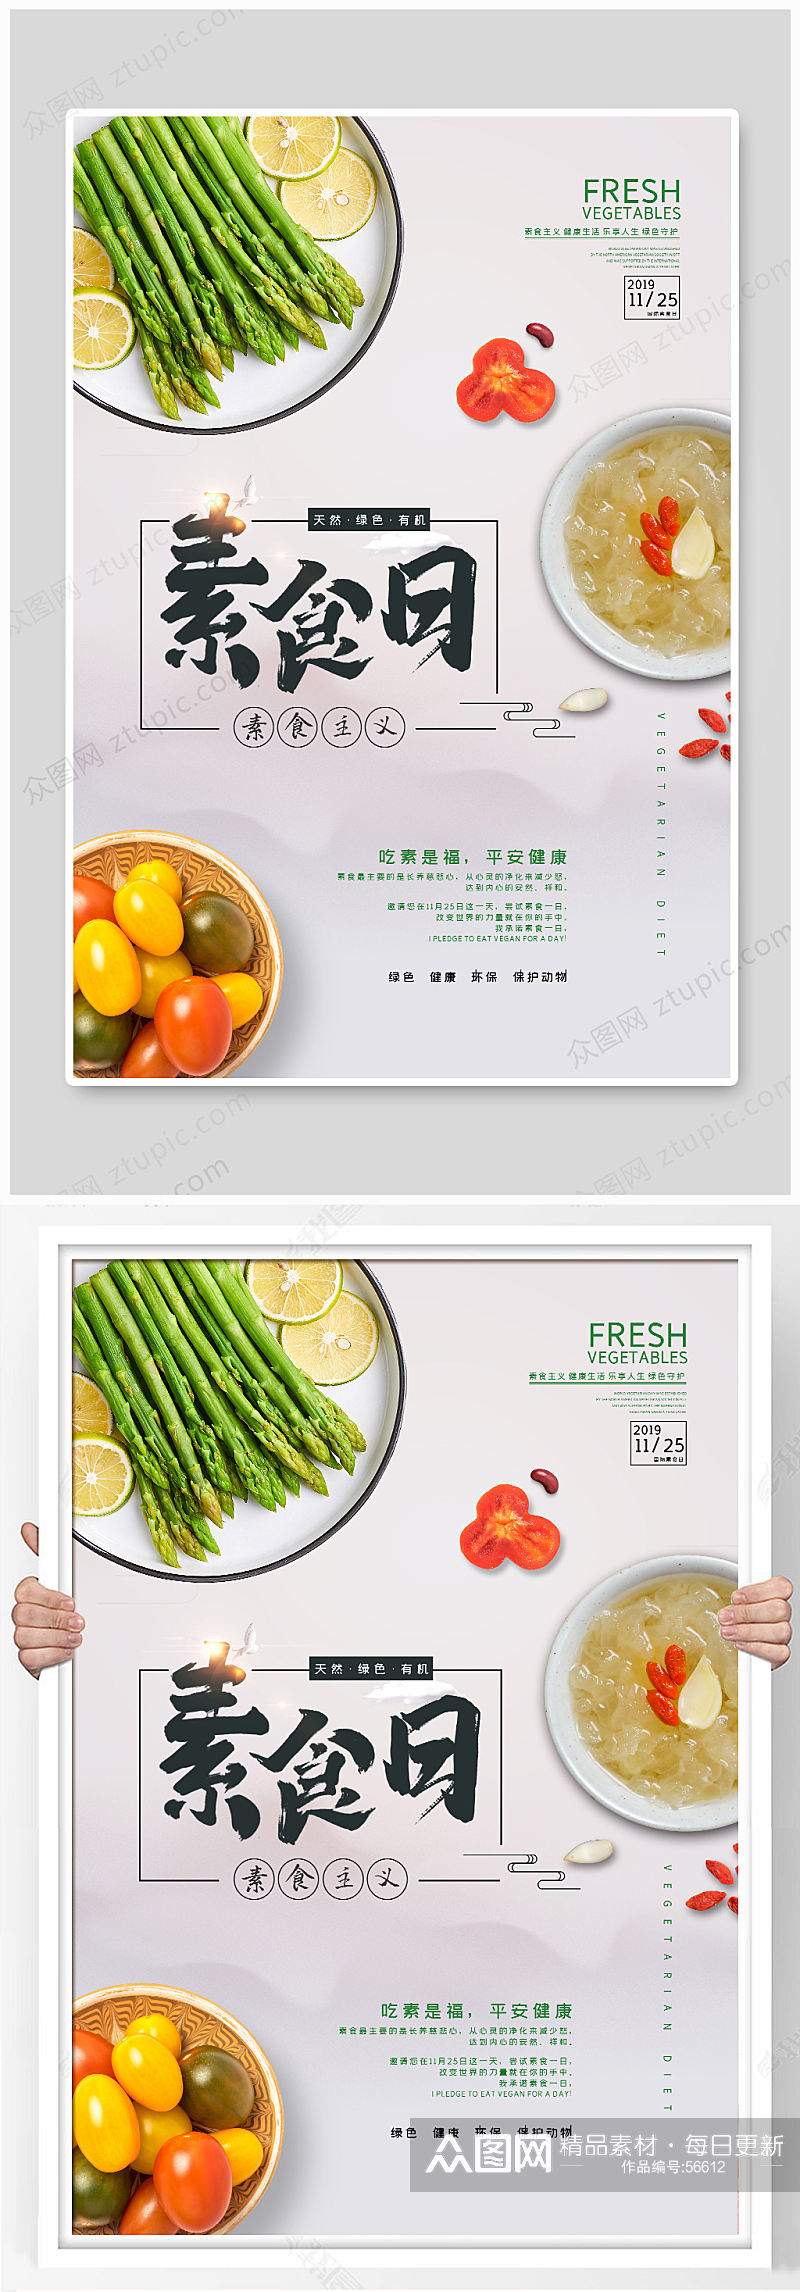 小亲新素食日海报设计素材